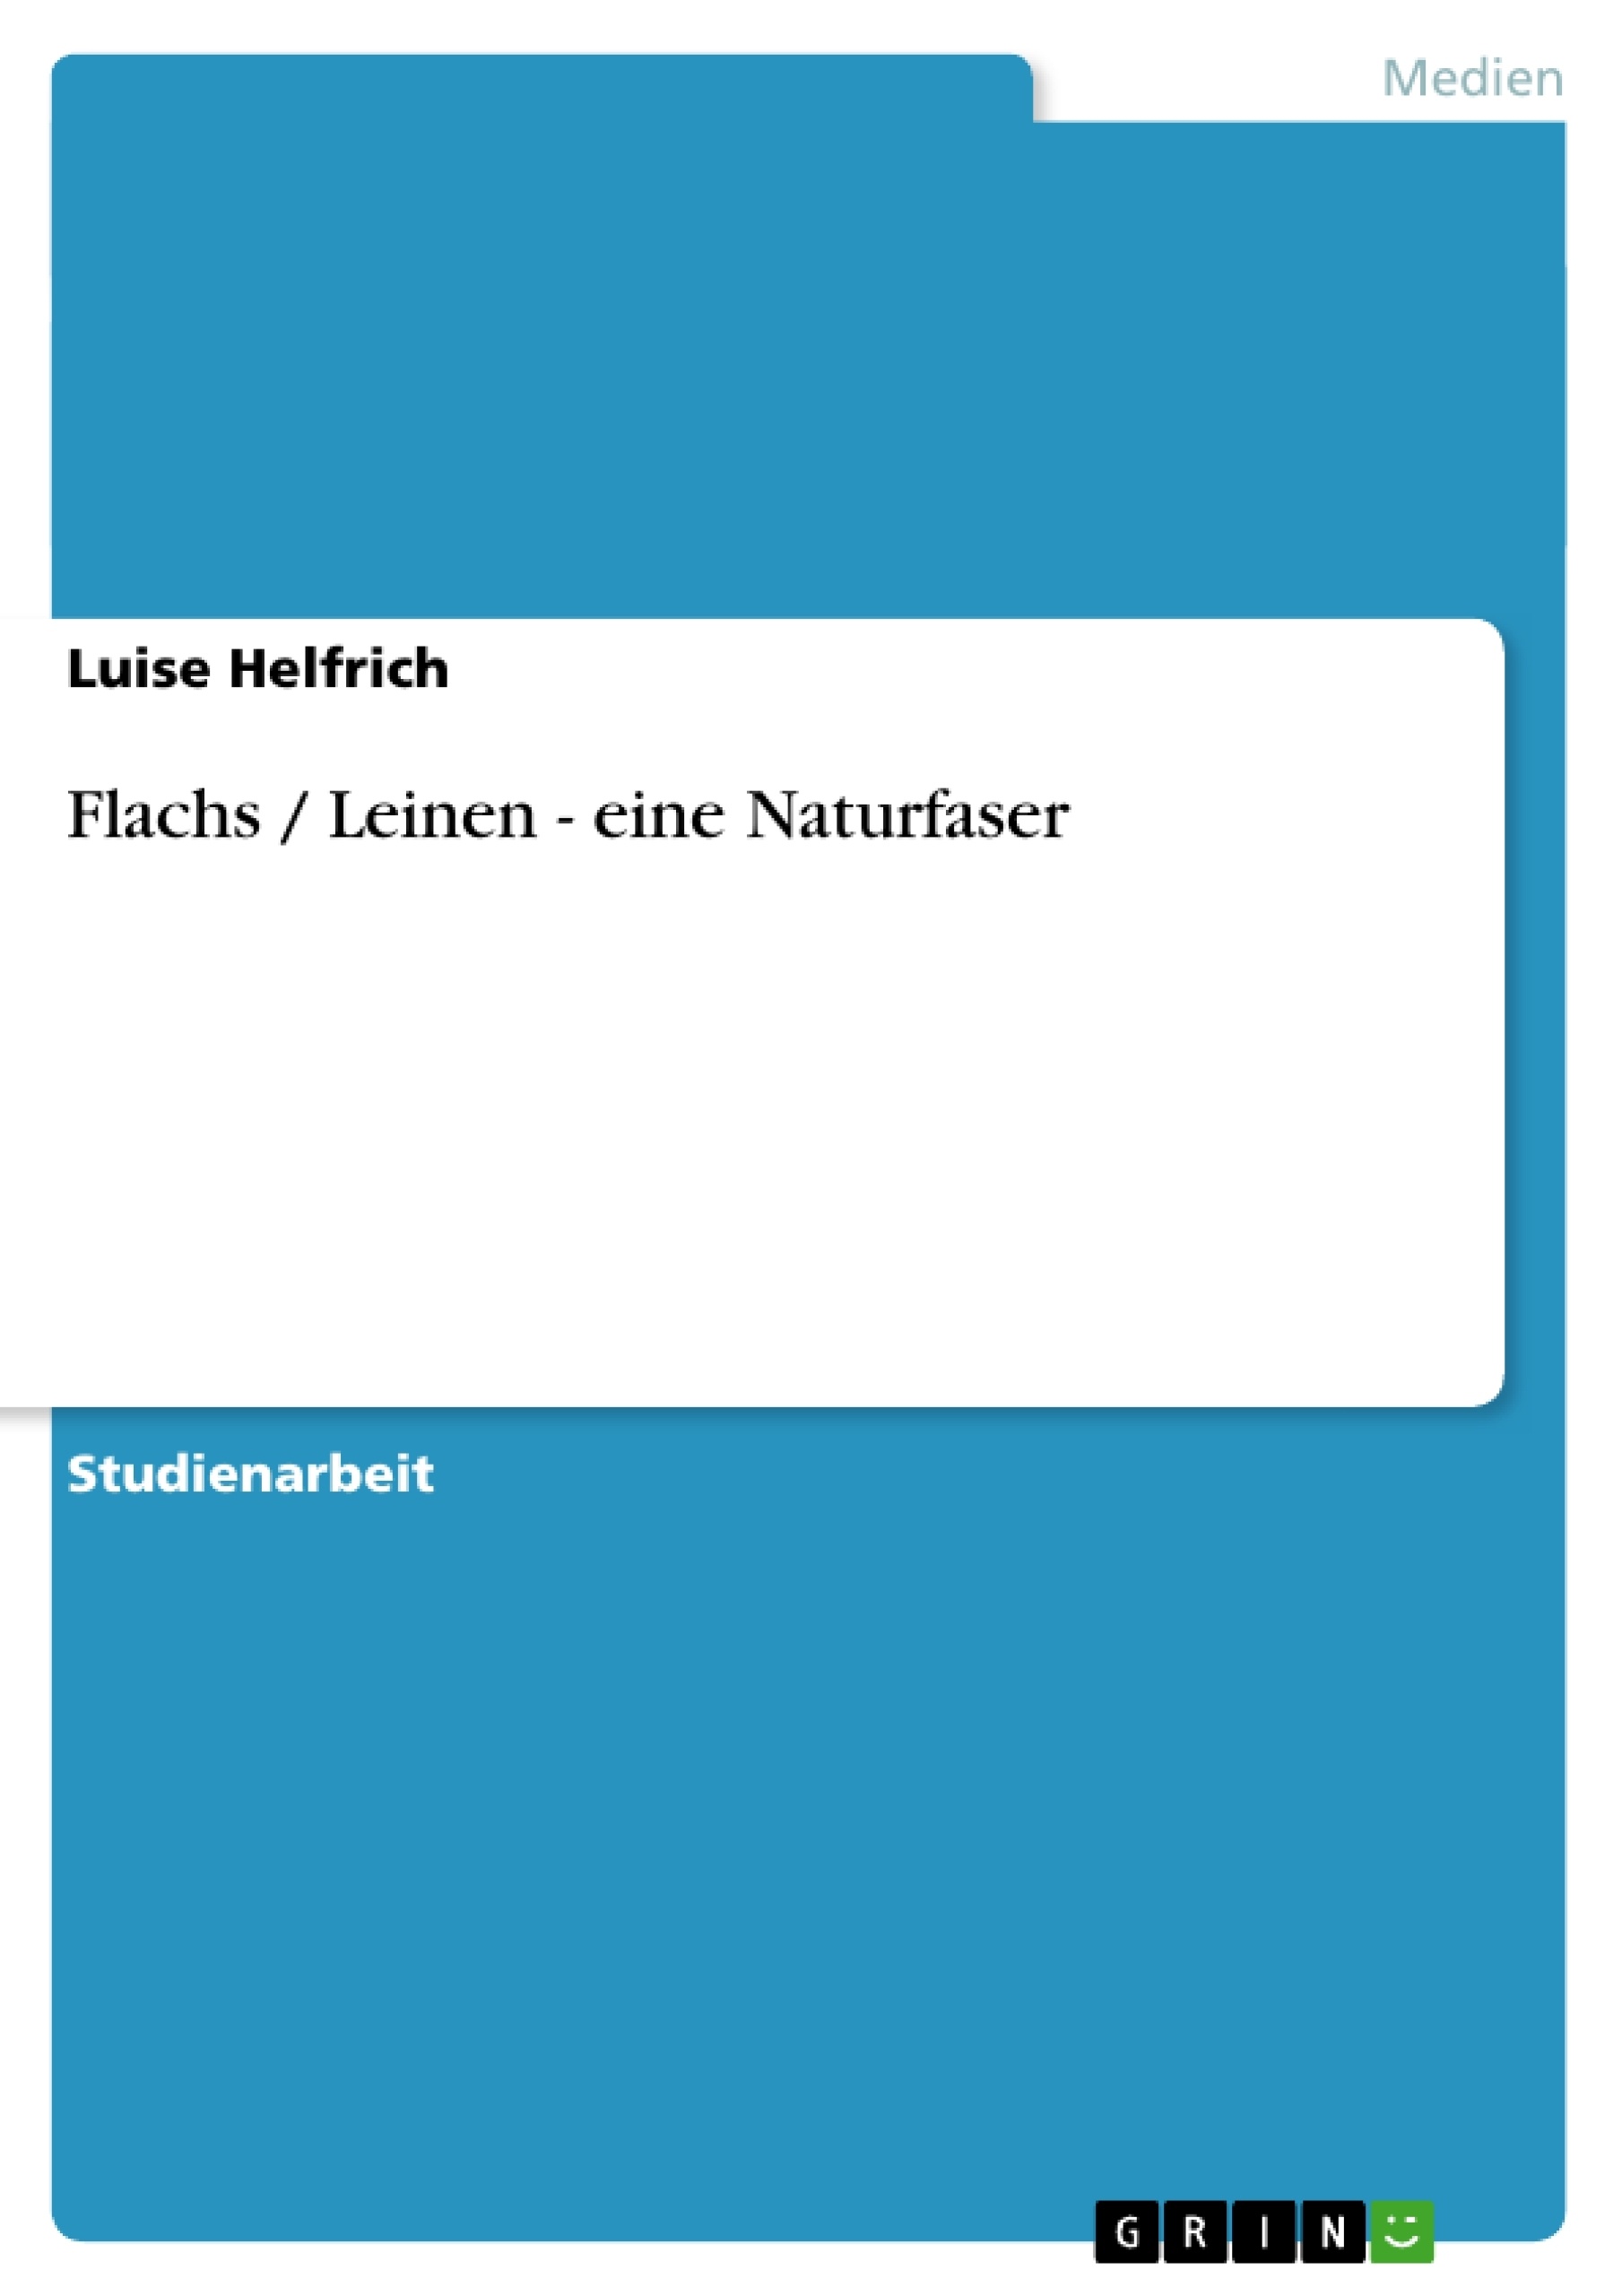 Titre: Flachs / Leinen - eine Naturfaser